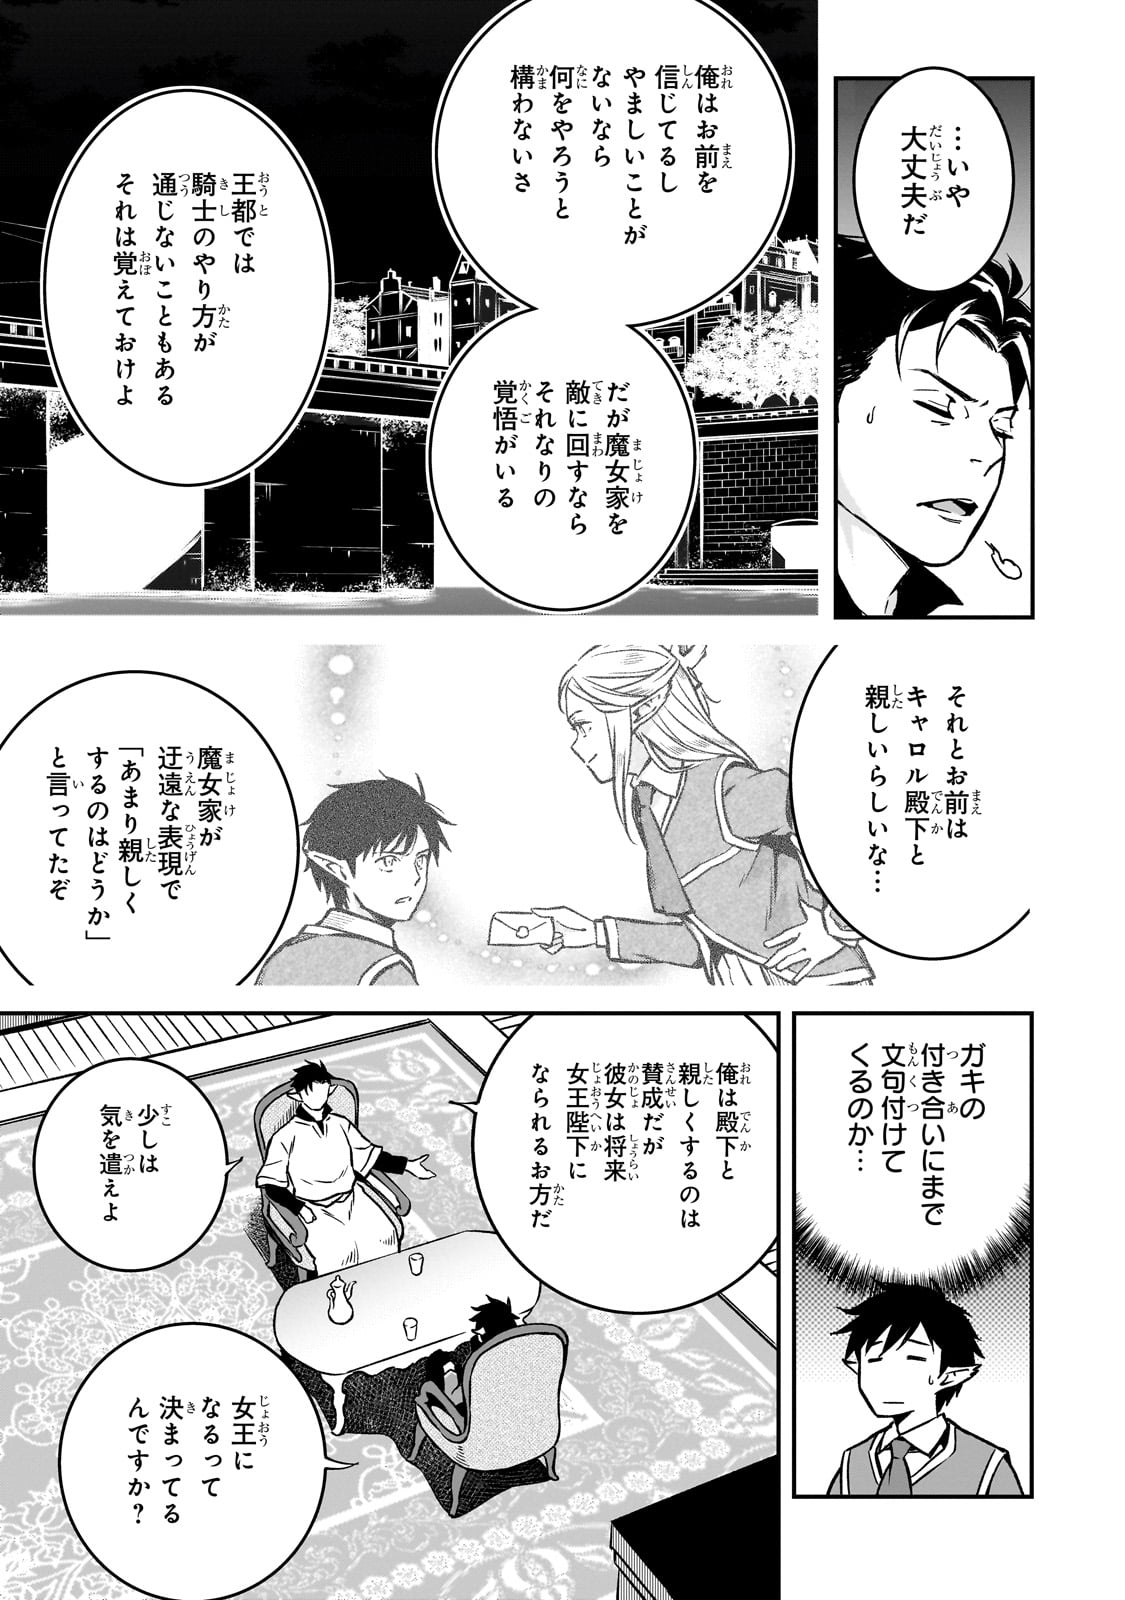 Horobi no Kuni no Seifukusha – Maou wa Sekai wo Seifuku suru you desu - Chapter 23 - Page 15